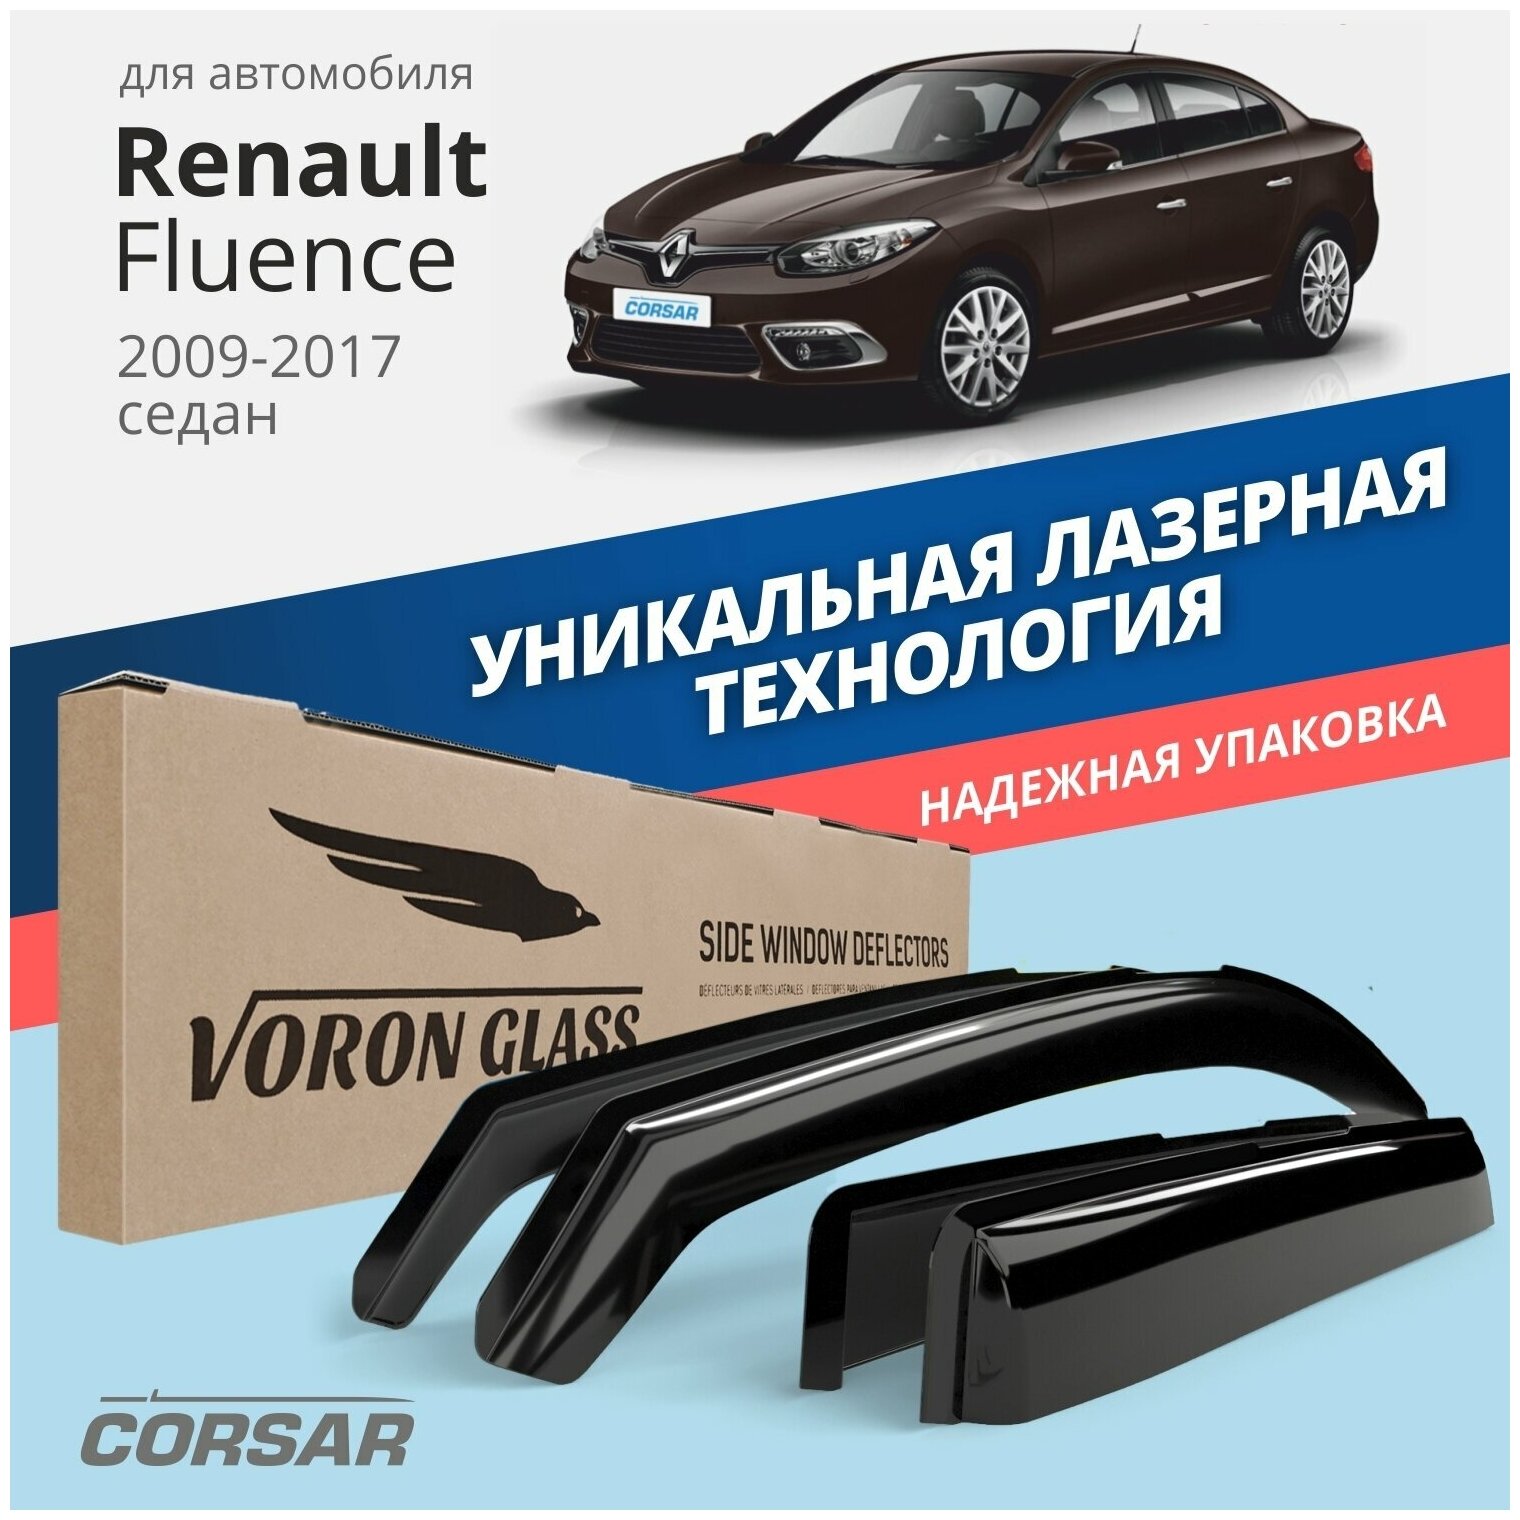 Дефлекторы окон Voron Glass Corsar Renault Fluence Sd 2009-н.в седан, комплект 4 шт, DEF00859 - фото №10